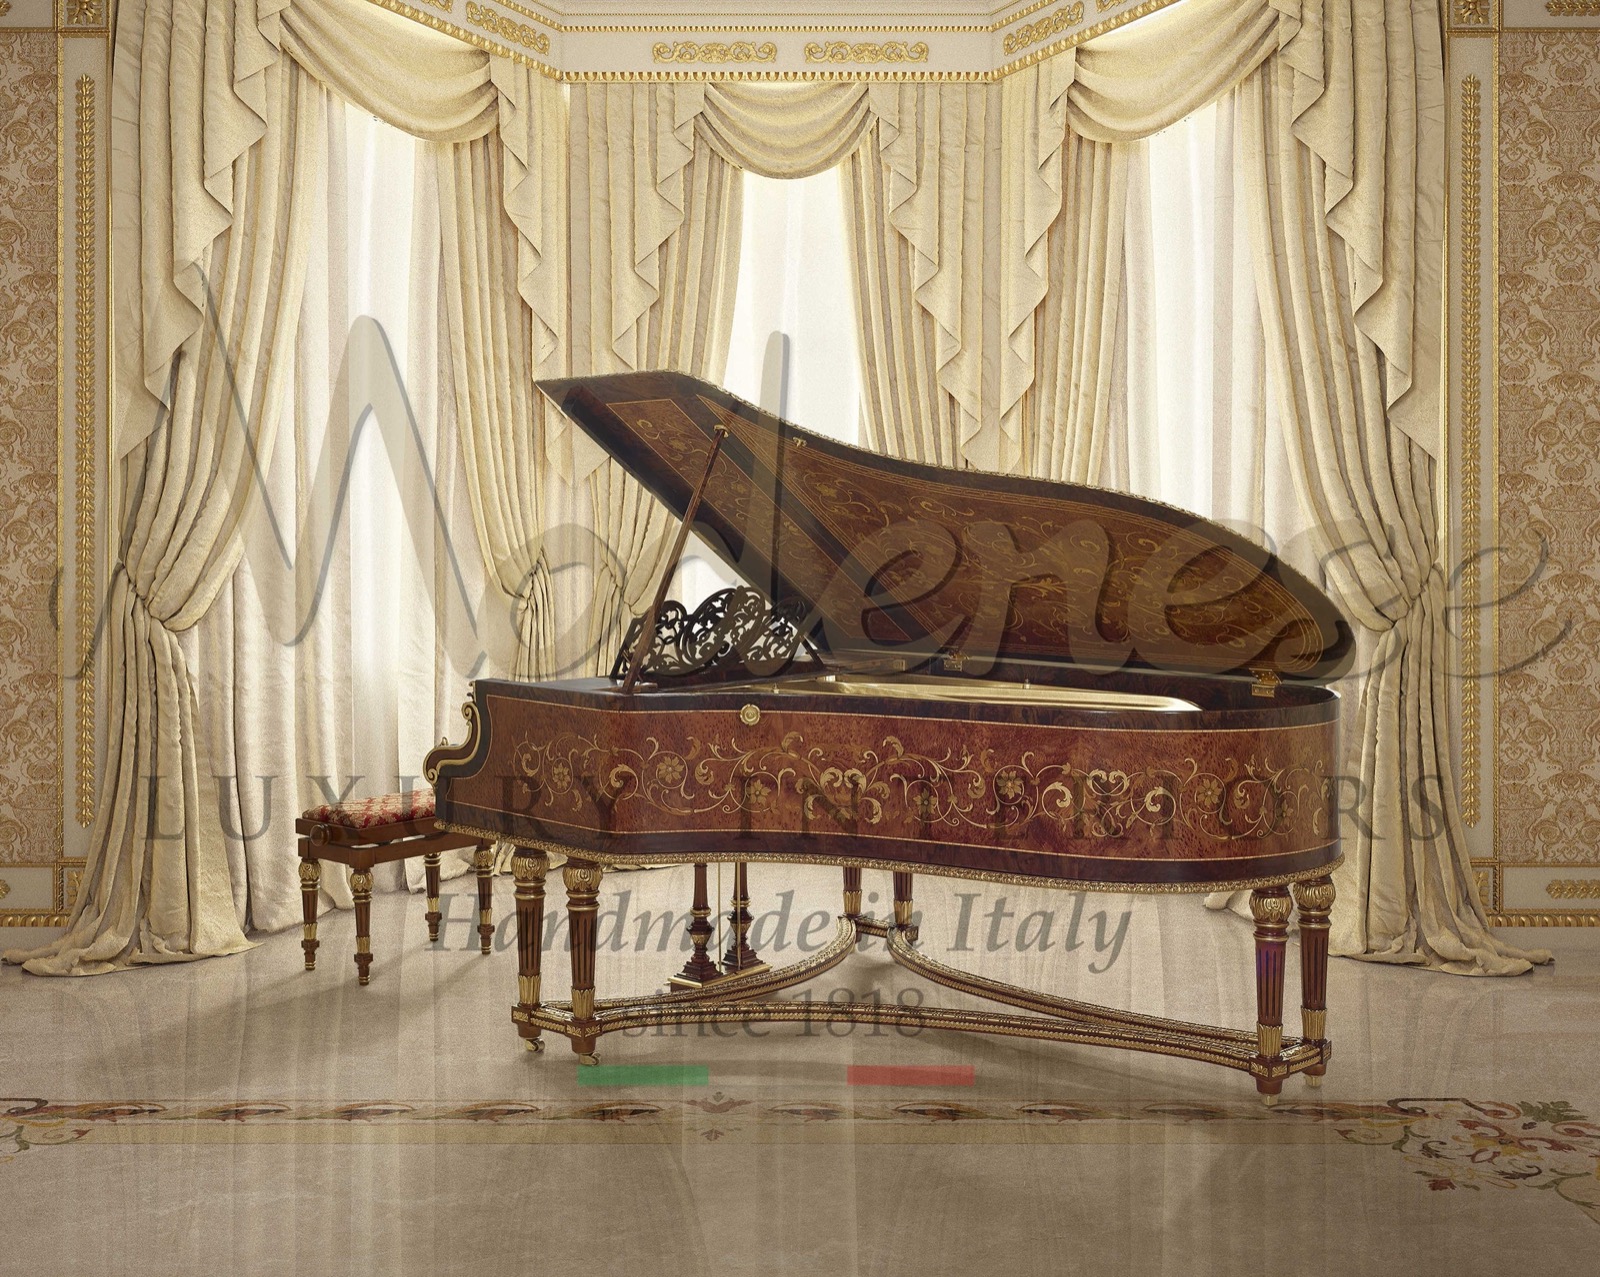 restauration piano de luxe décoration artisanale incrustations 3D pose de feuille d'or décor sur mesure villa palais fabrication artisans artisanat design royal